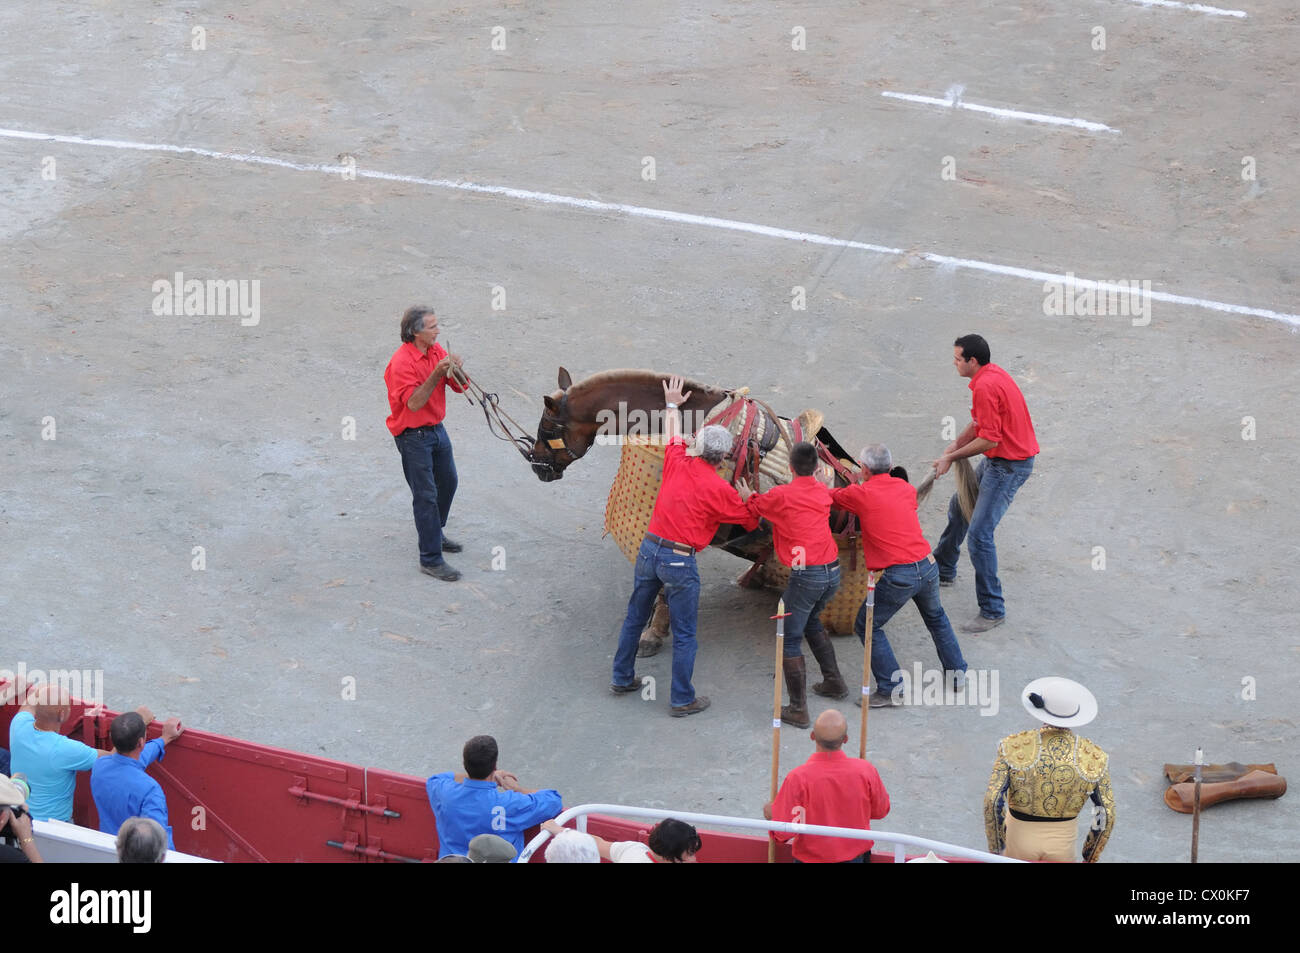 Pferd aufrecht zu stehen, nachdem er von Bull in Corrida Bulle geworfen zu helfen Männer kämpfen in römischen Arena-Arles-Frankreich Stockfoto